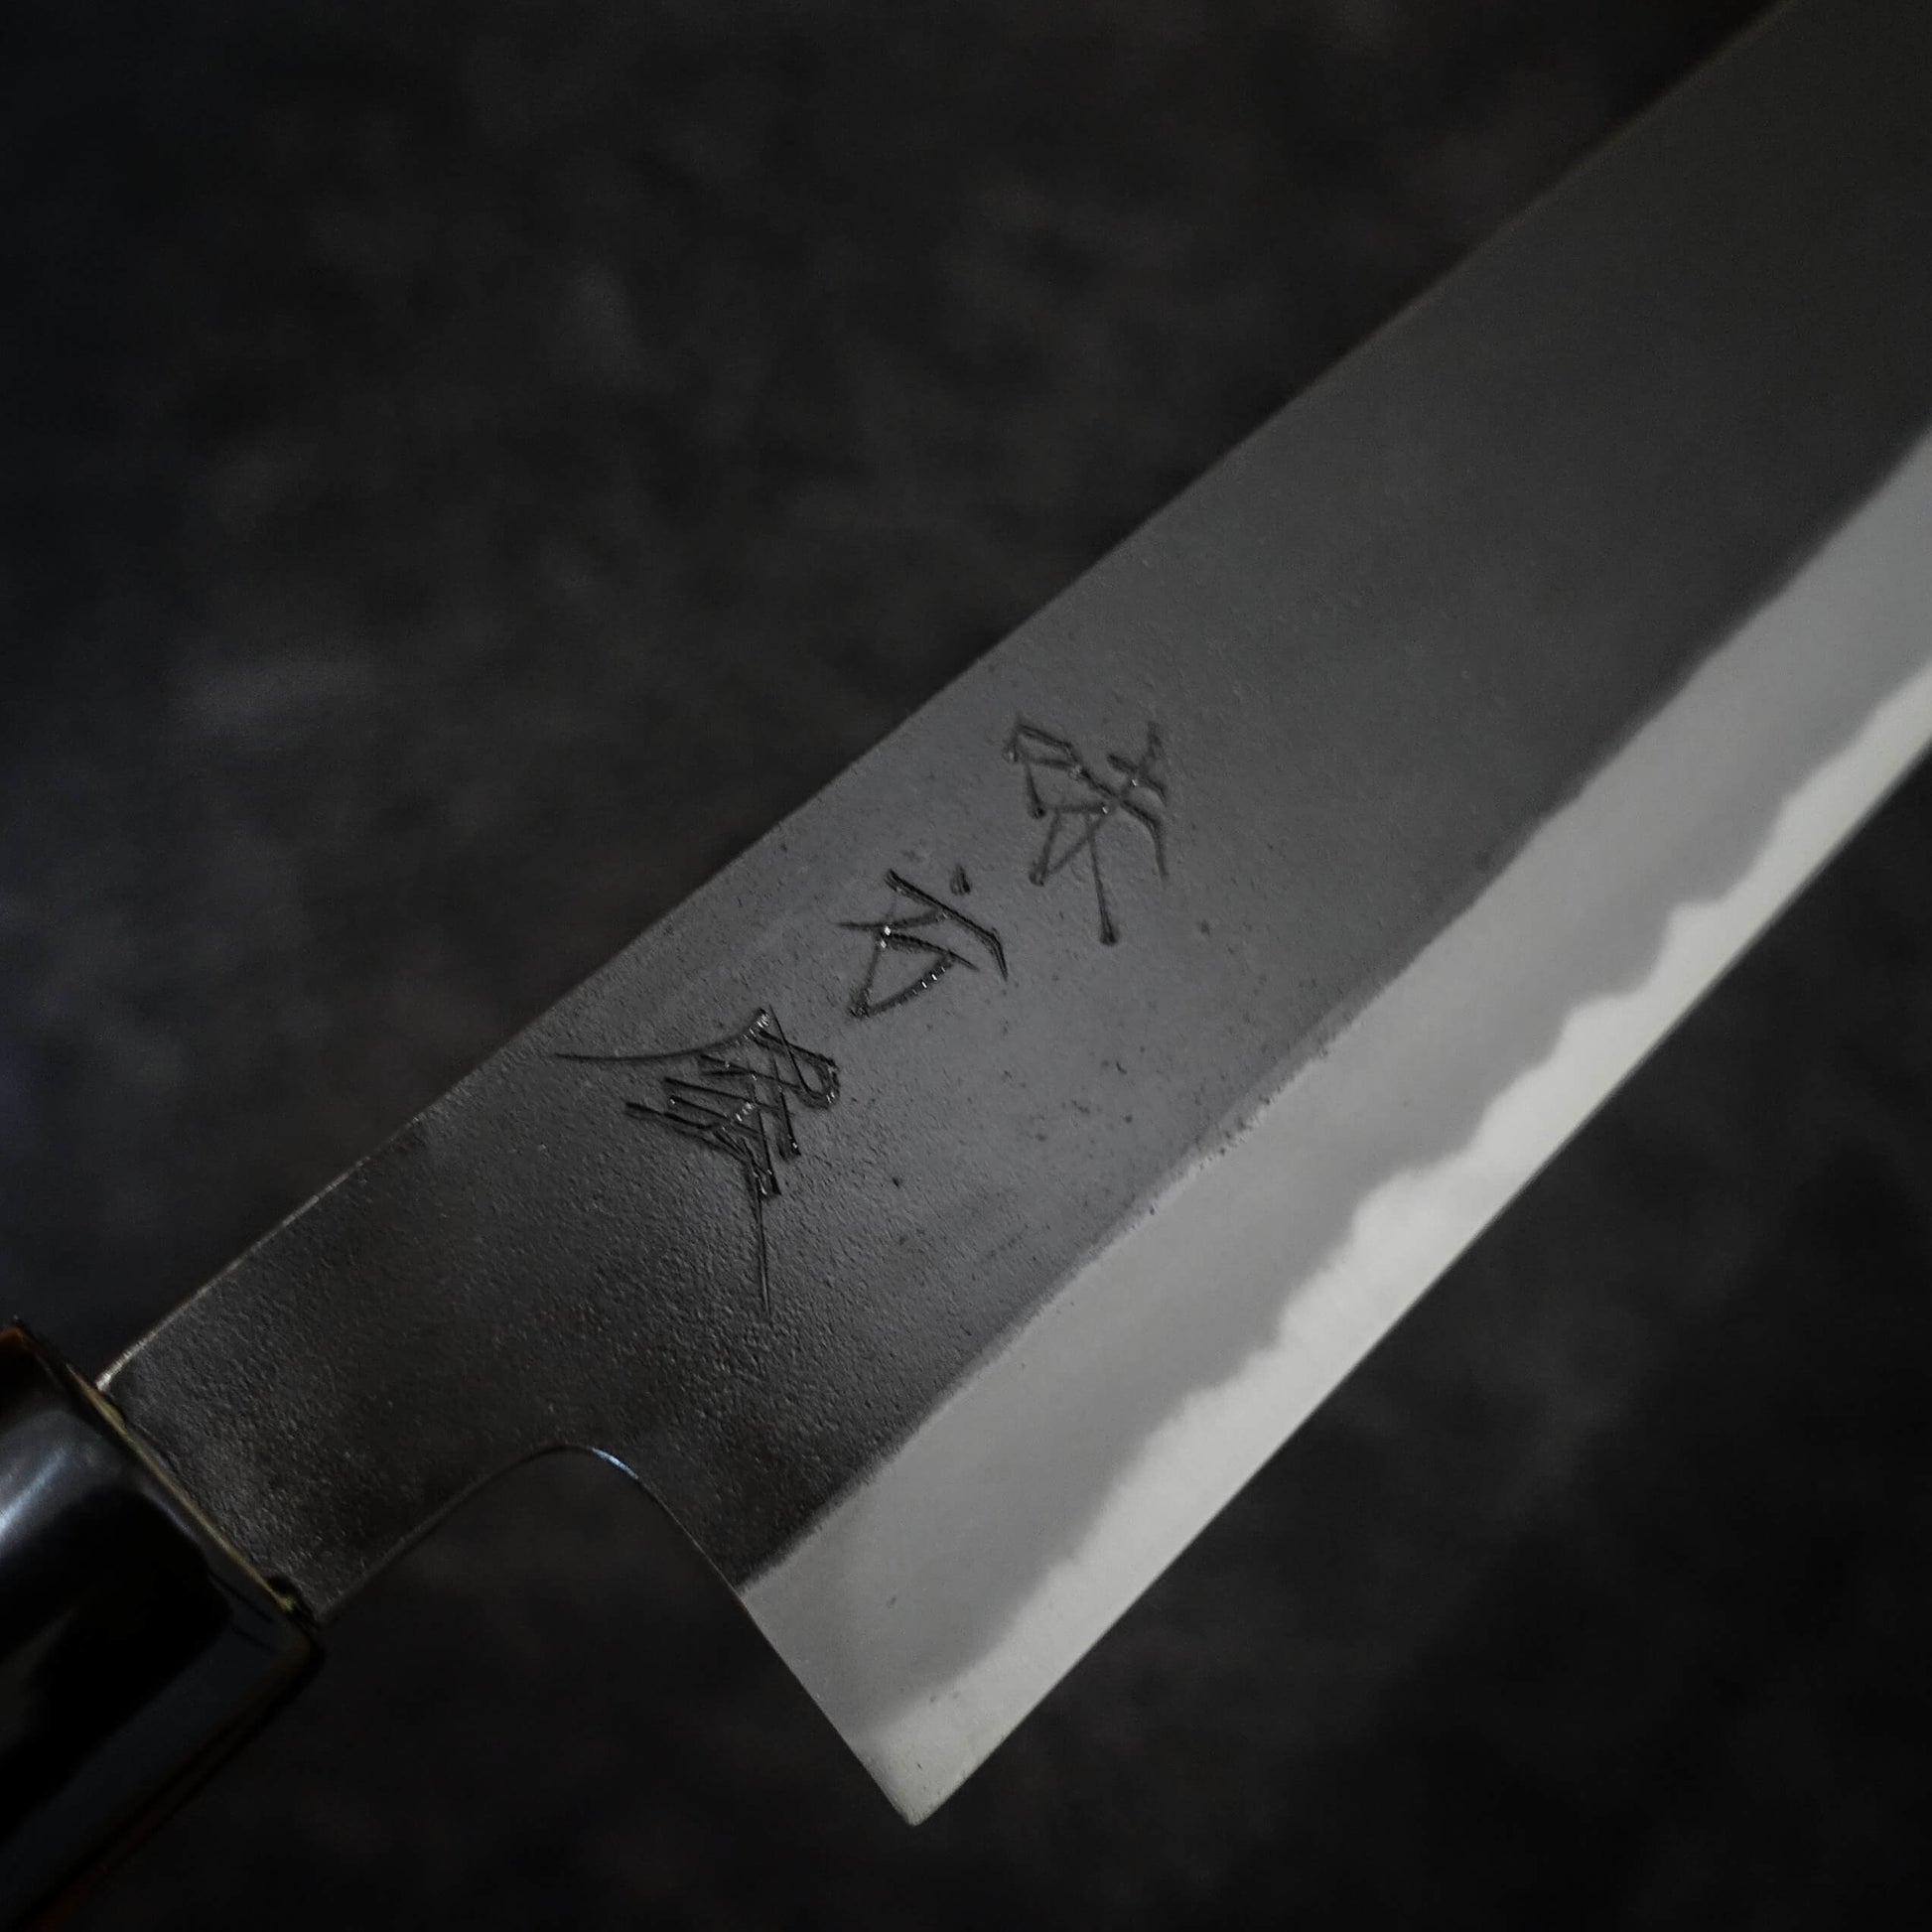 Hinoura kurouchi shirogami #2 165mm nakiri - Zahocho Japanese Knives